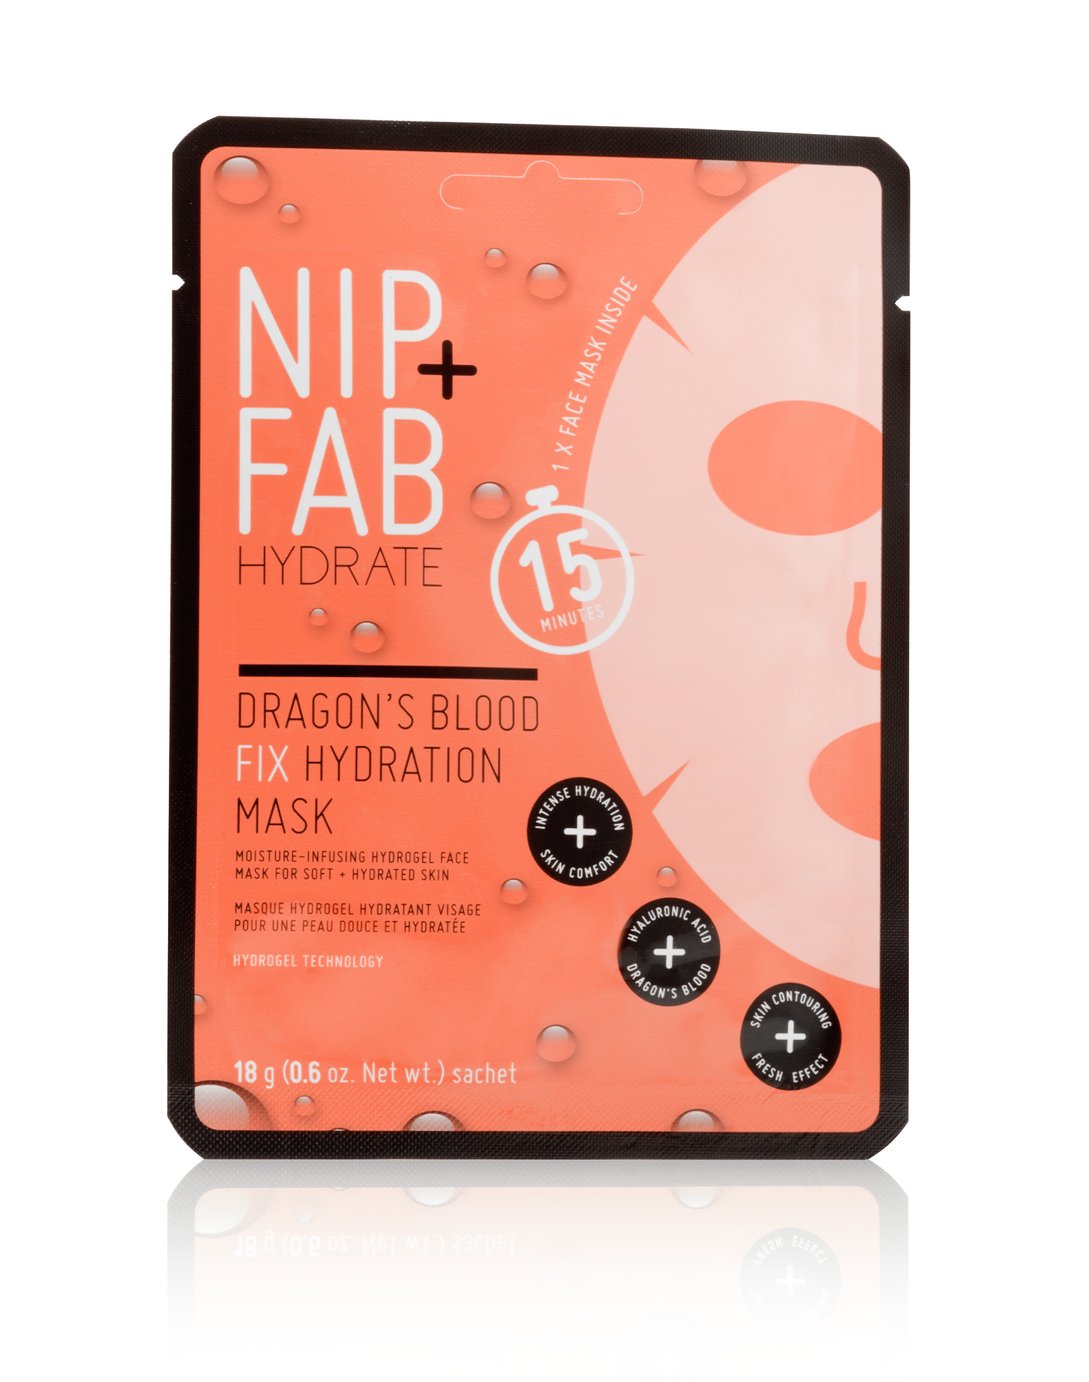 NIP+FAB Dragons Blood Hydration Mask - 18g